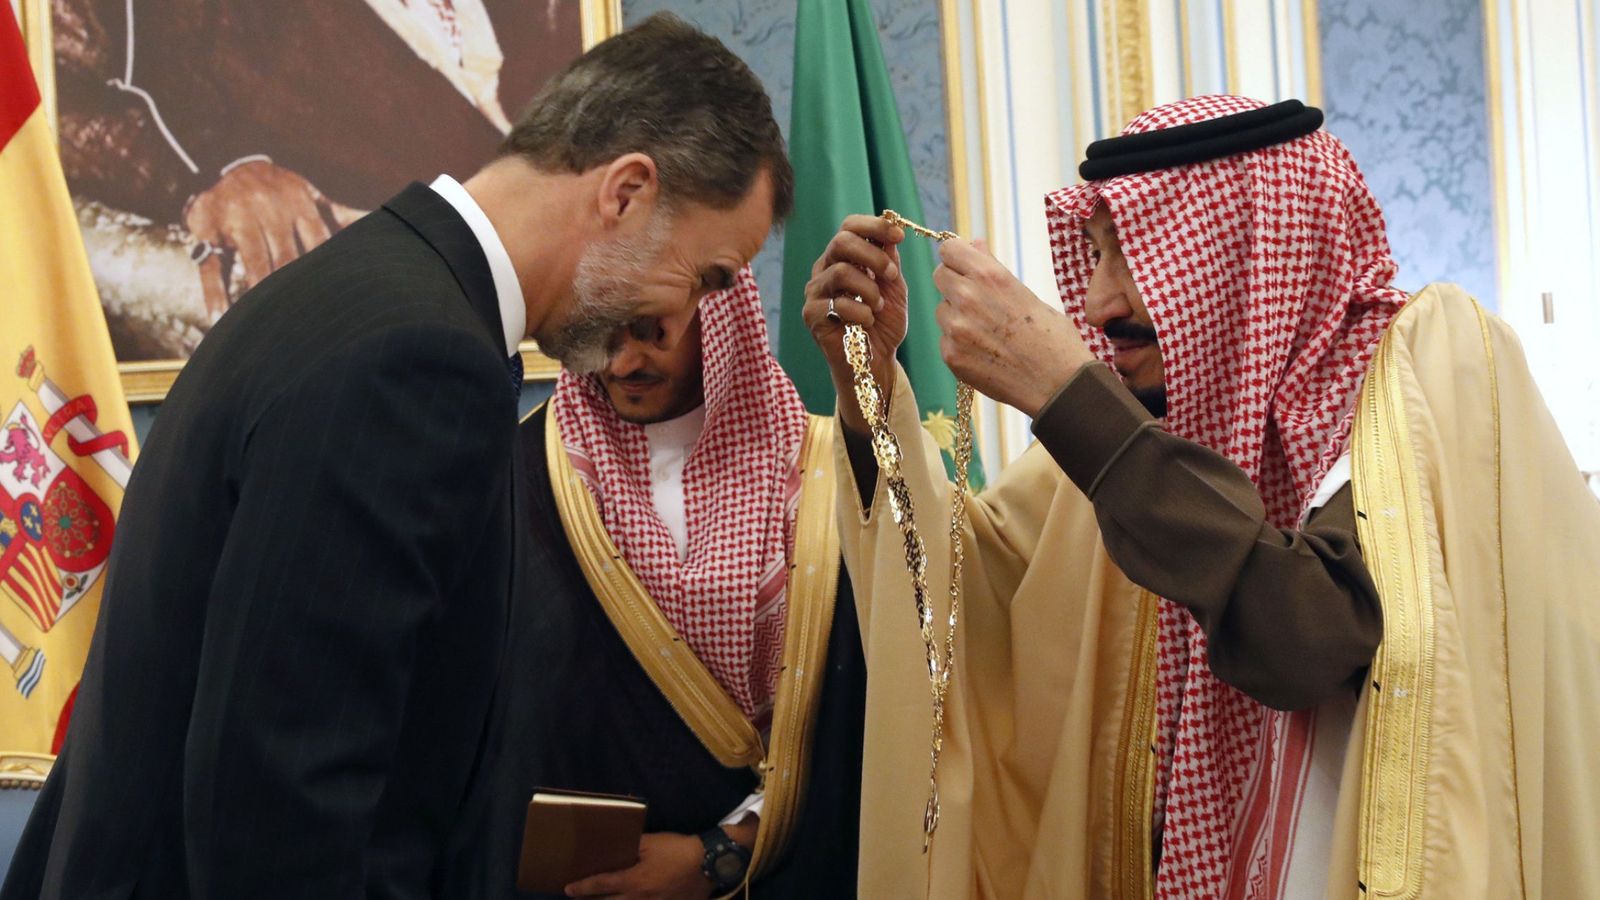 Foto: Felipe VI recibe el gran collar, la condecoración más importante que concede el reino saudí, de manos del rey Salman bin Abdelaziz. (EFE)